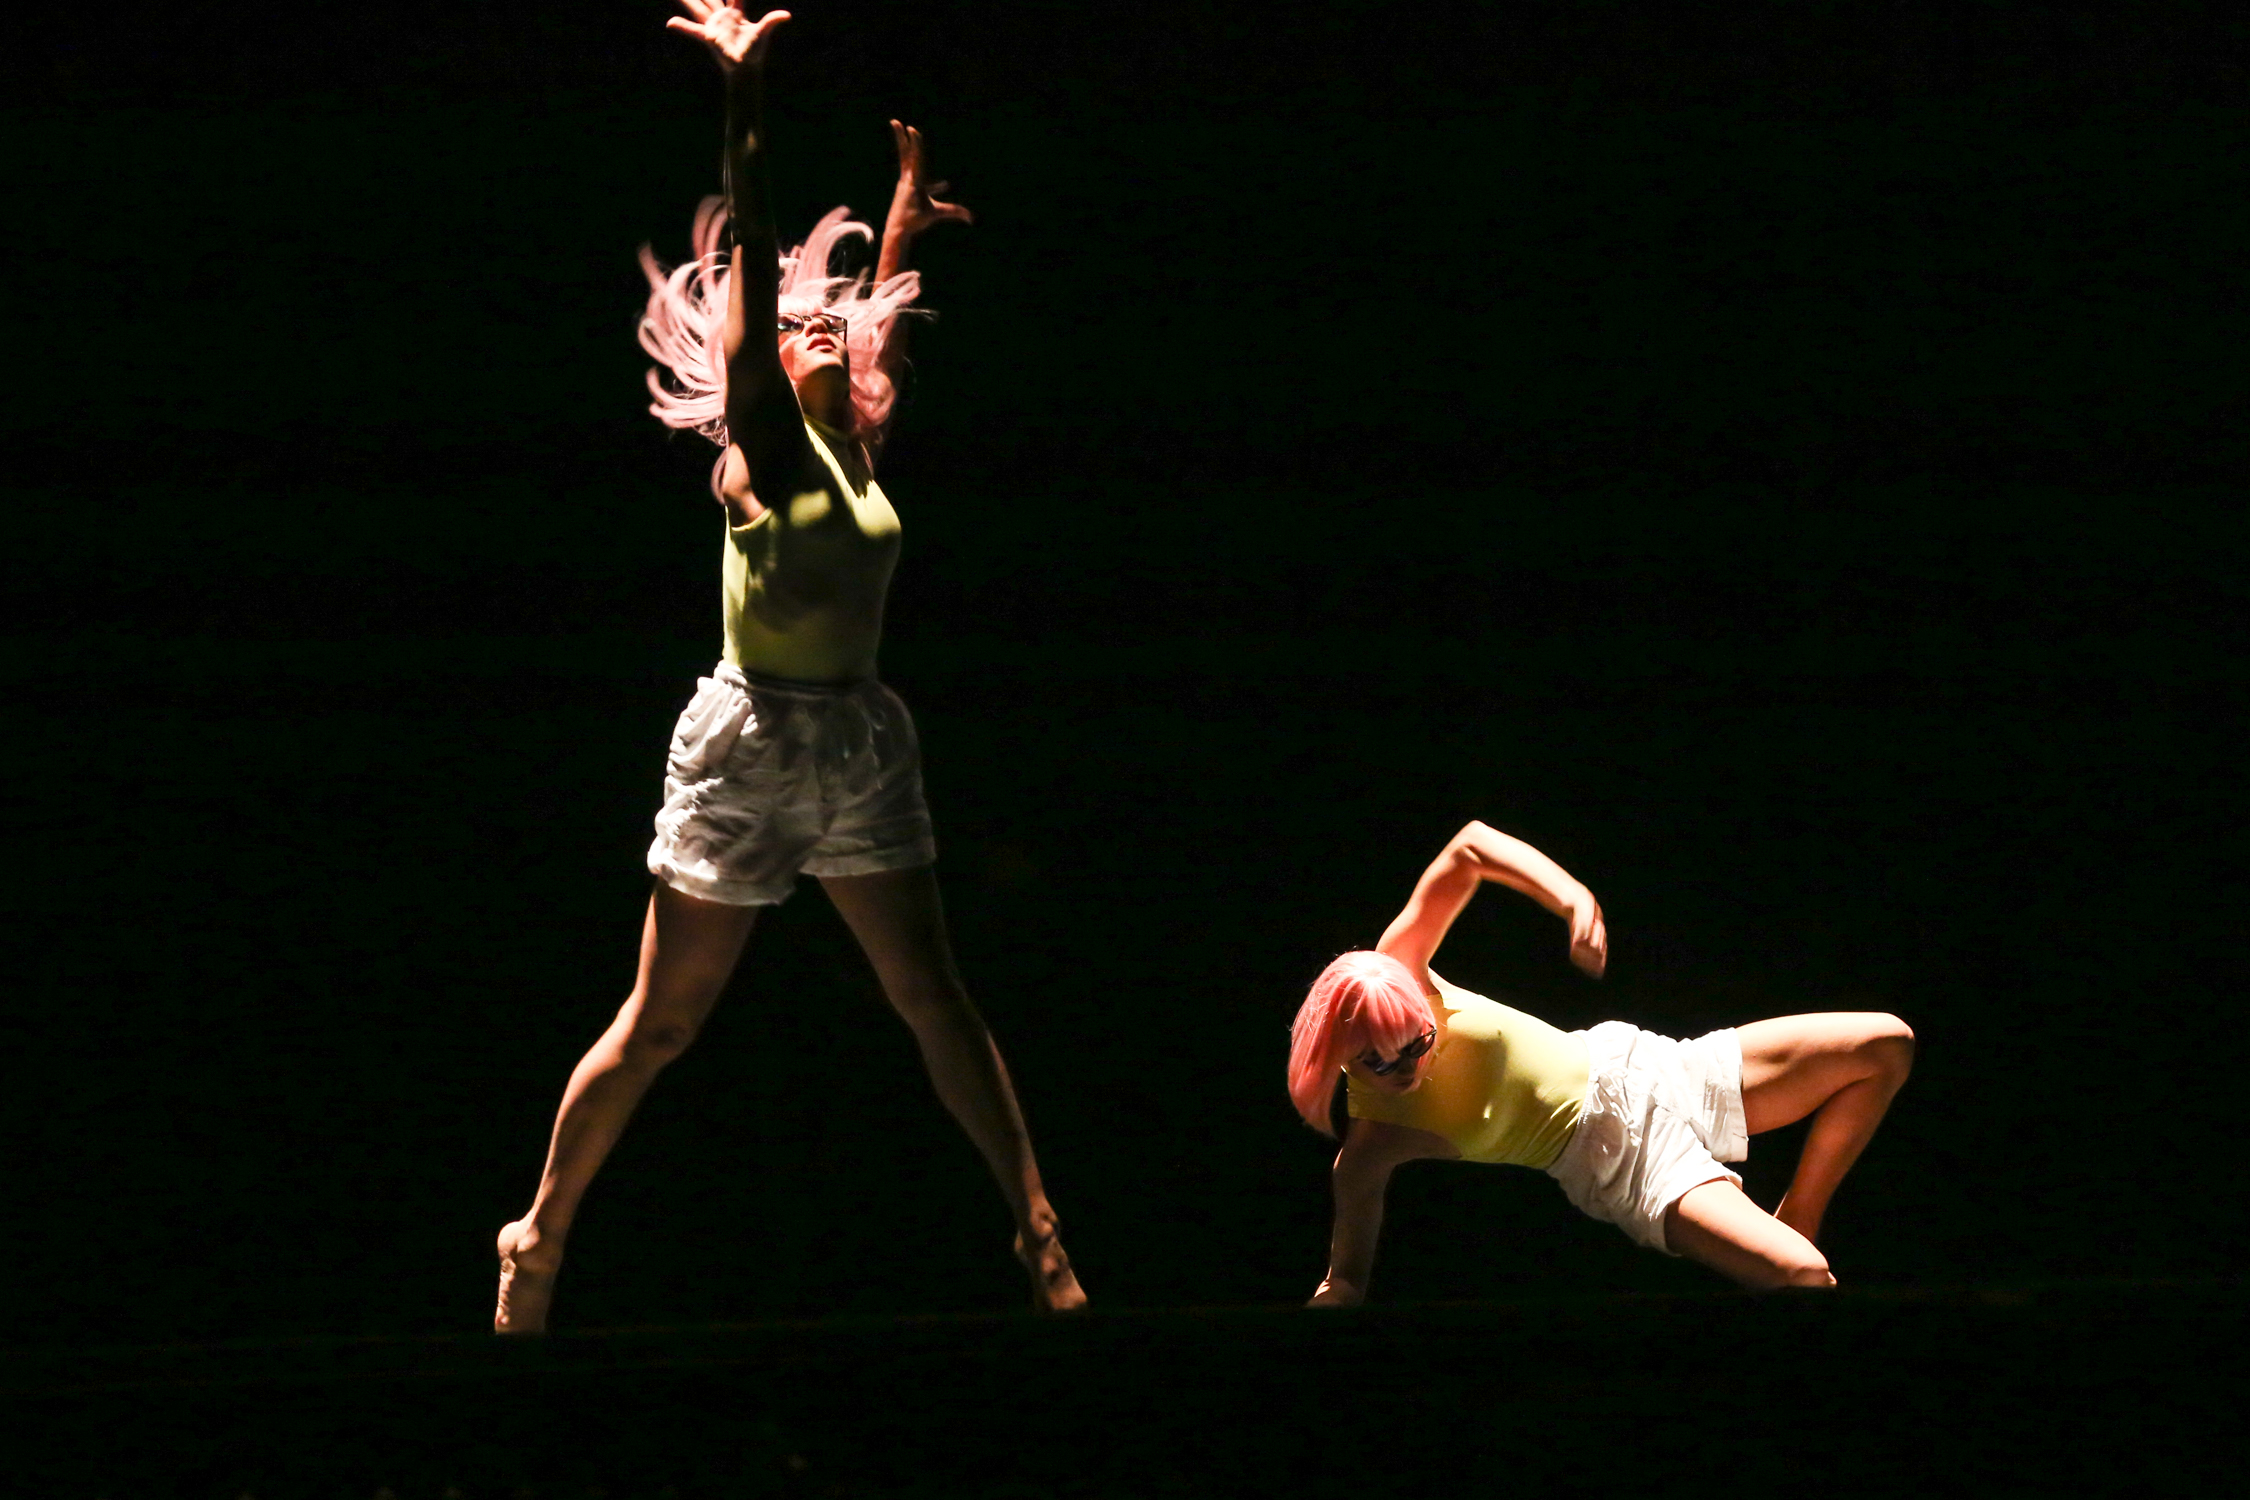 pc: Peter Richter / Your Move Dance Festival